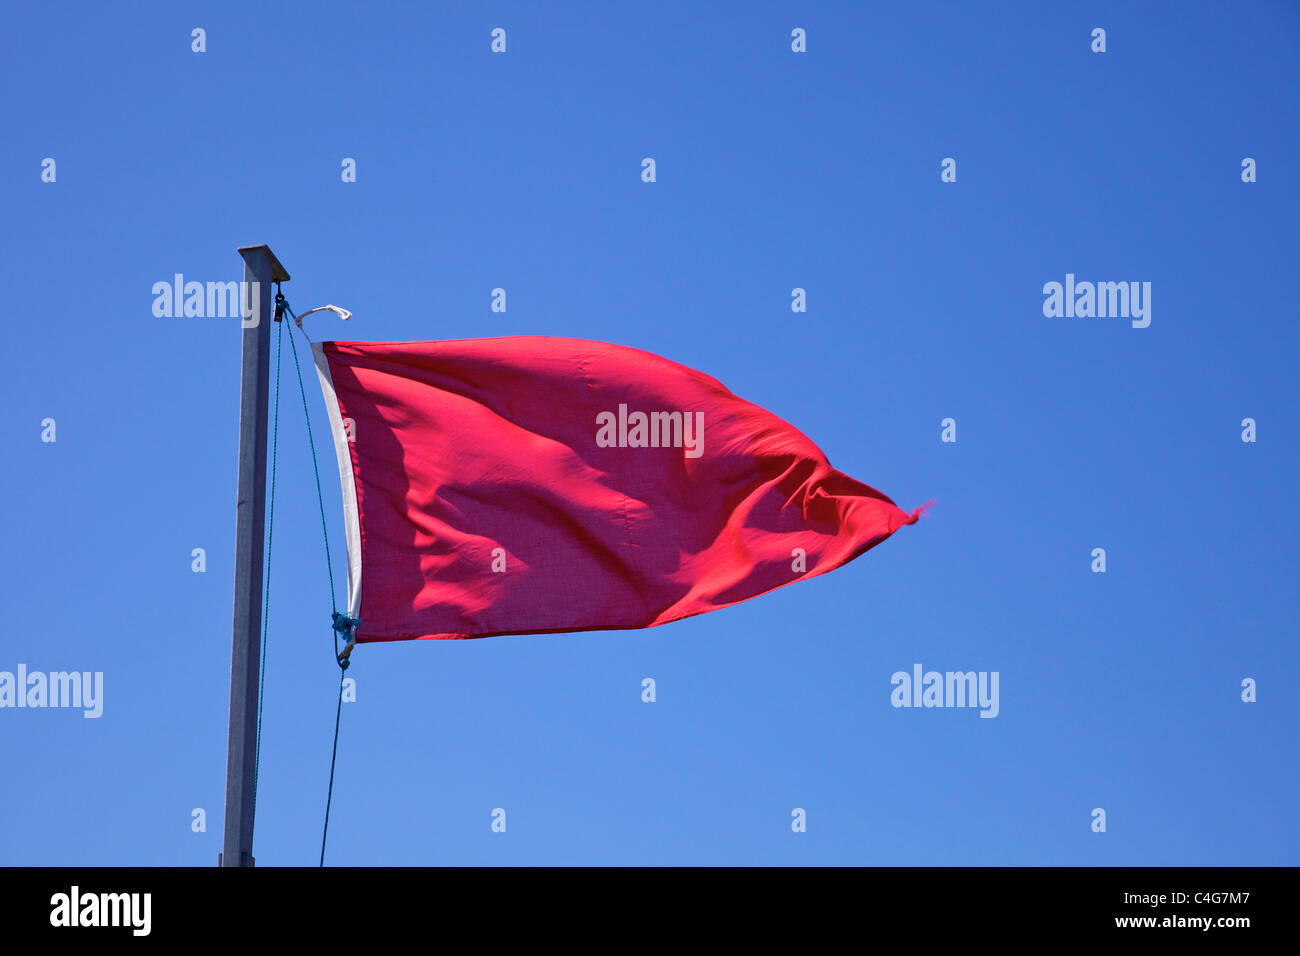 Bandera roja ondeando contra el cielo azul Foto de stock